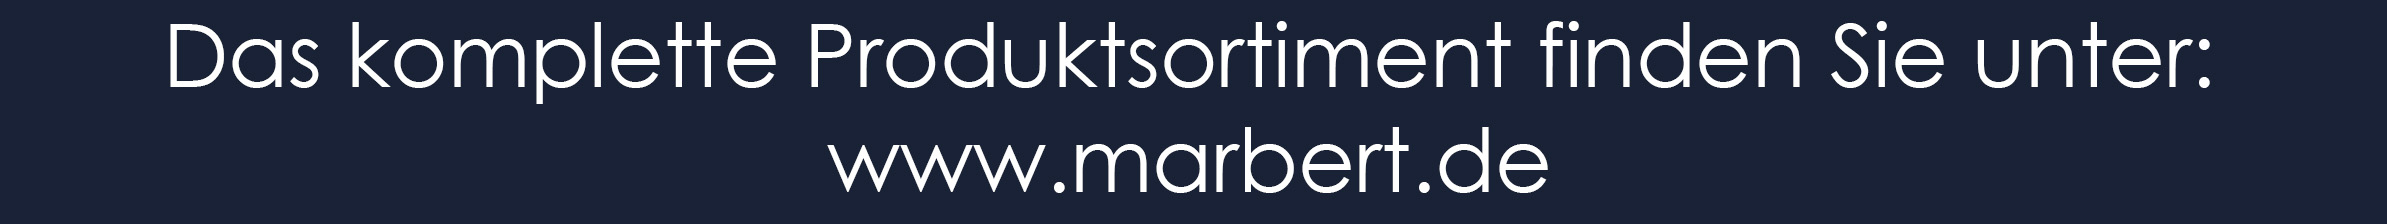 Marbert-Onlineshop